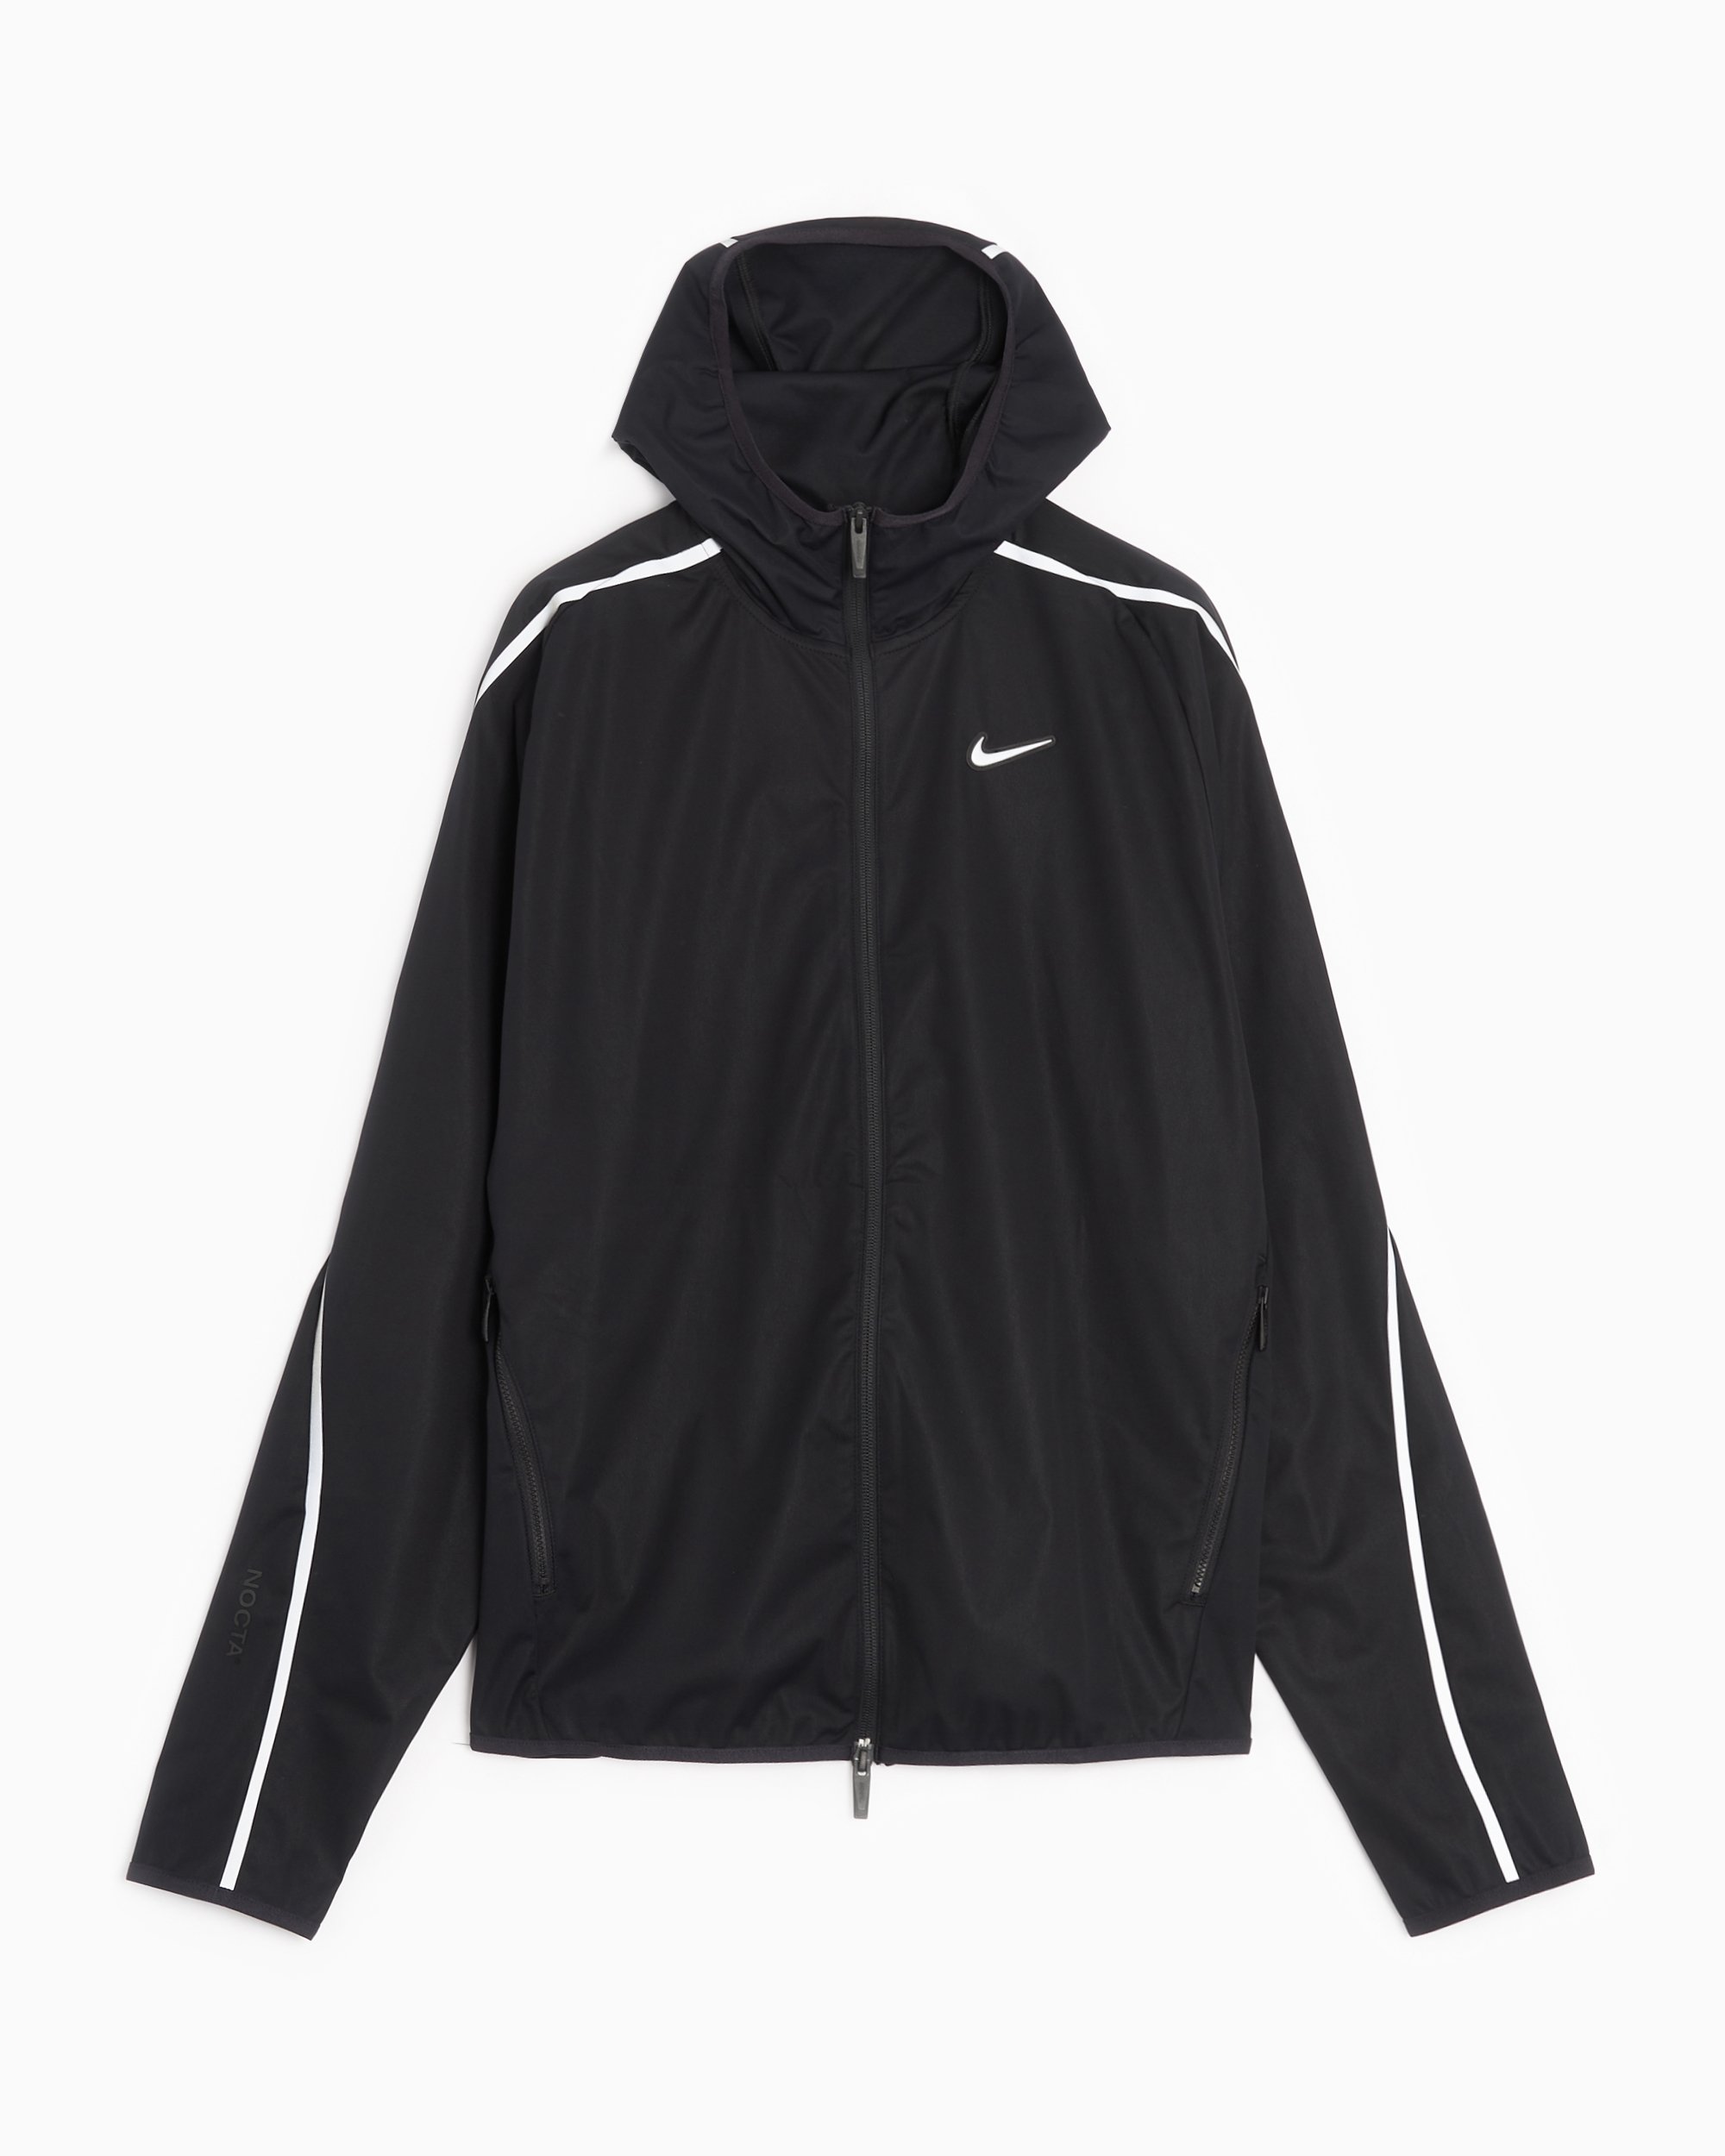 Nike x Drake NOCTA NRG Men's Men's Warm Up Jacket Black DV3661-010